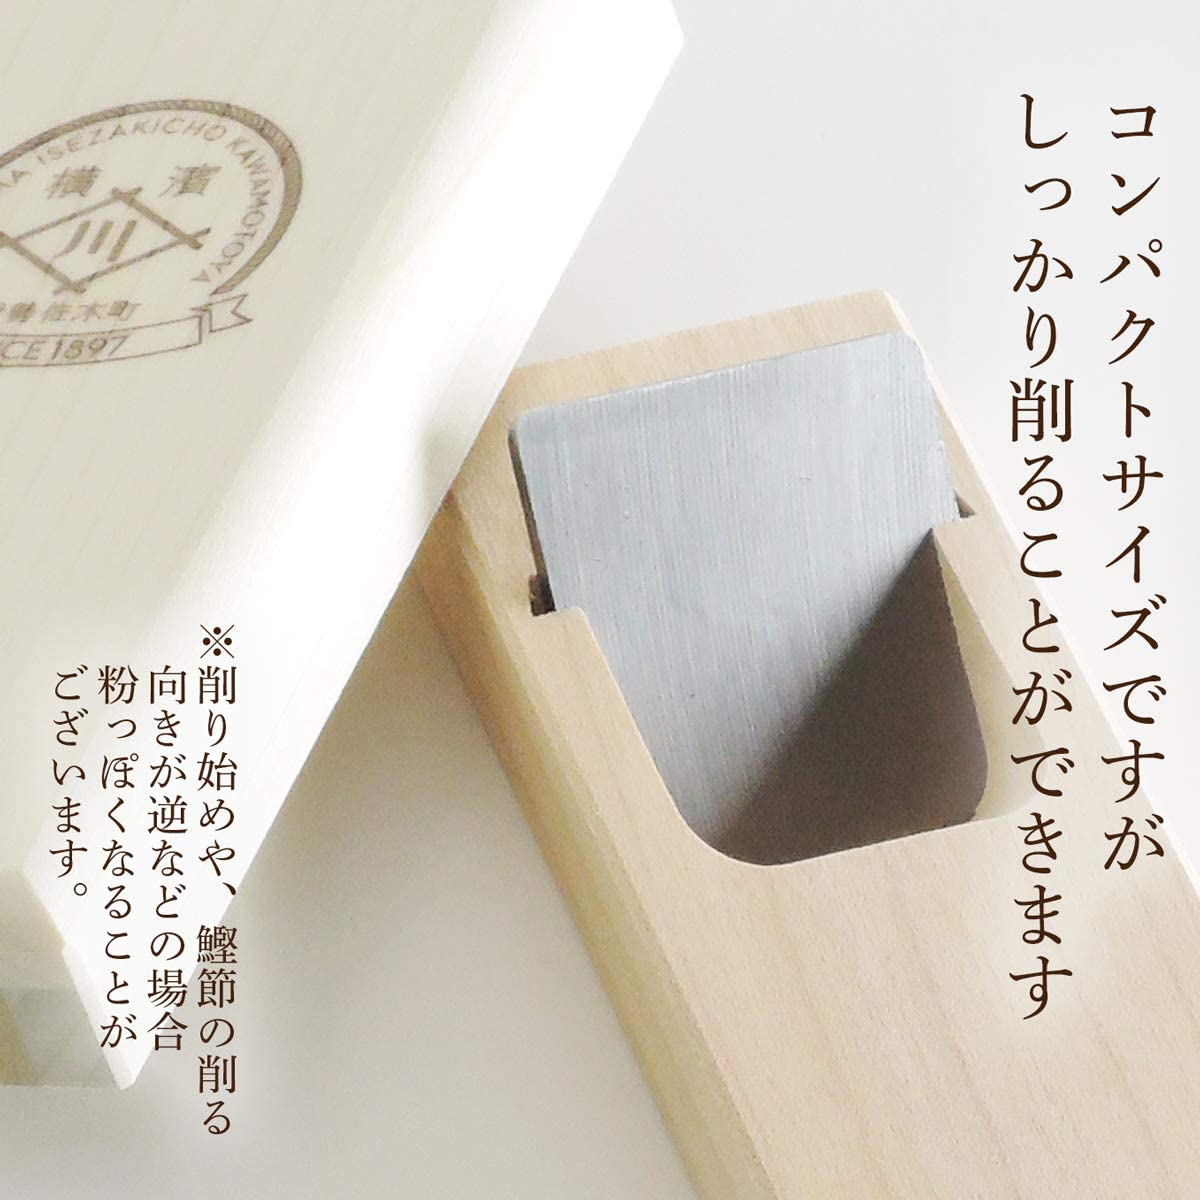 川本屋茶舗 鰹節とnewミニ削り器セットの商品画像サムネ5 